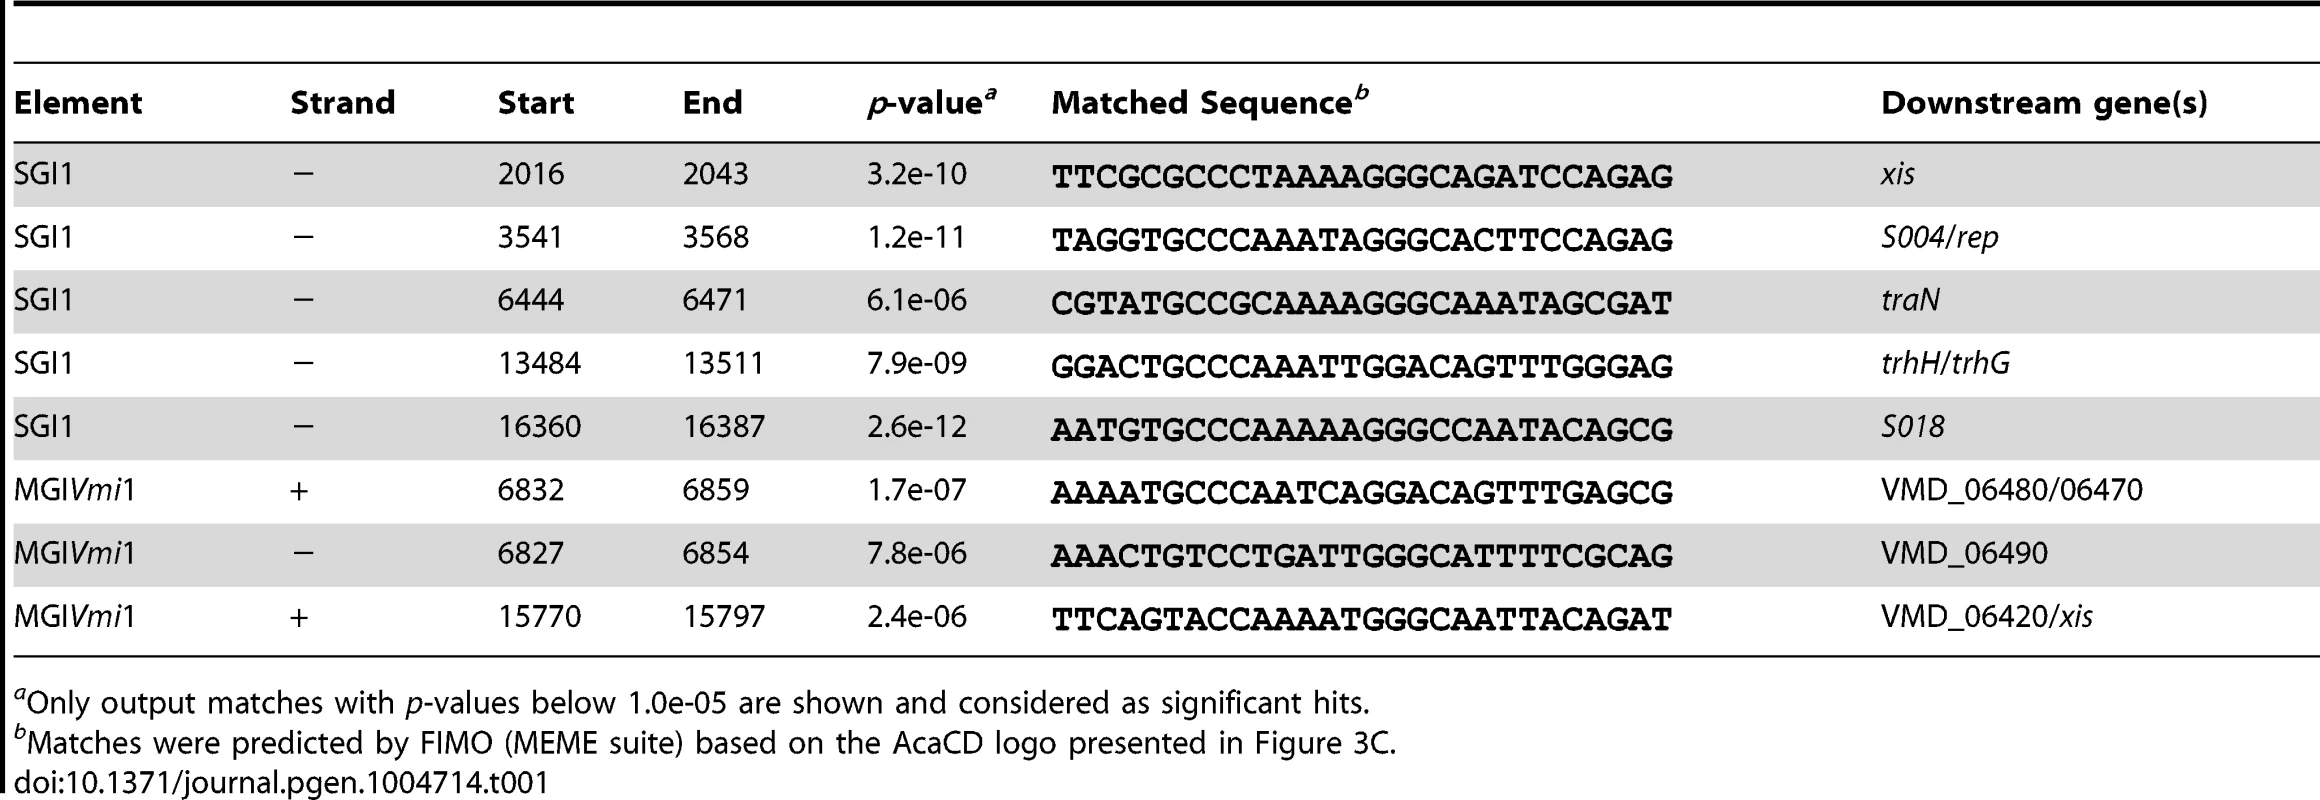 Prediction of putative AcaCD-binding sites in SGI1 and MGI<i>Vmi</i>1.